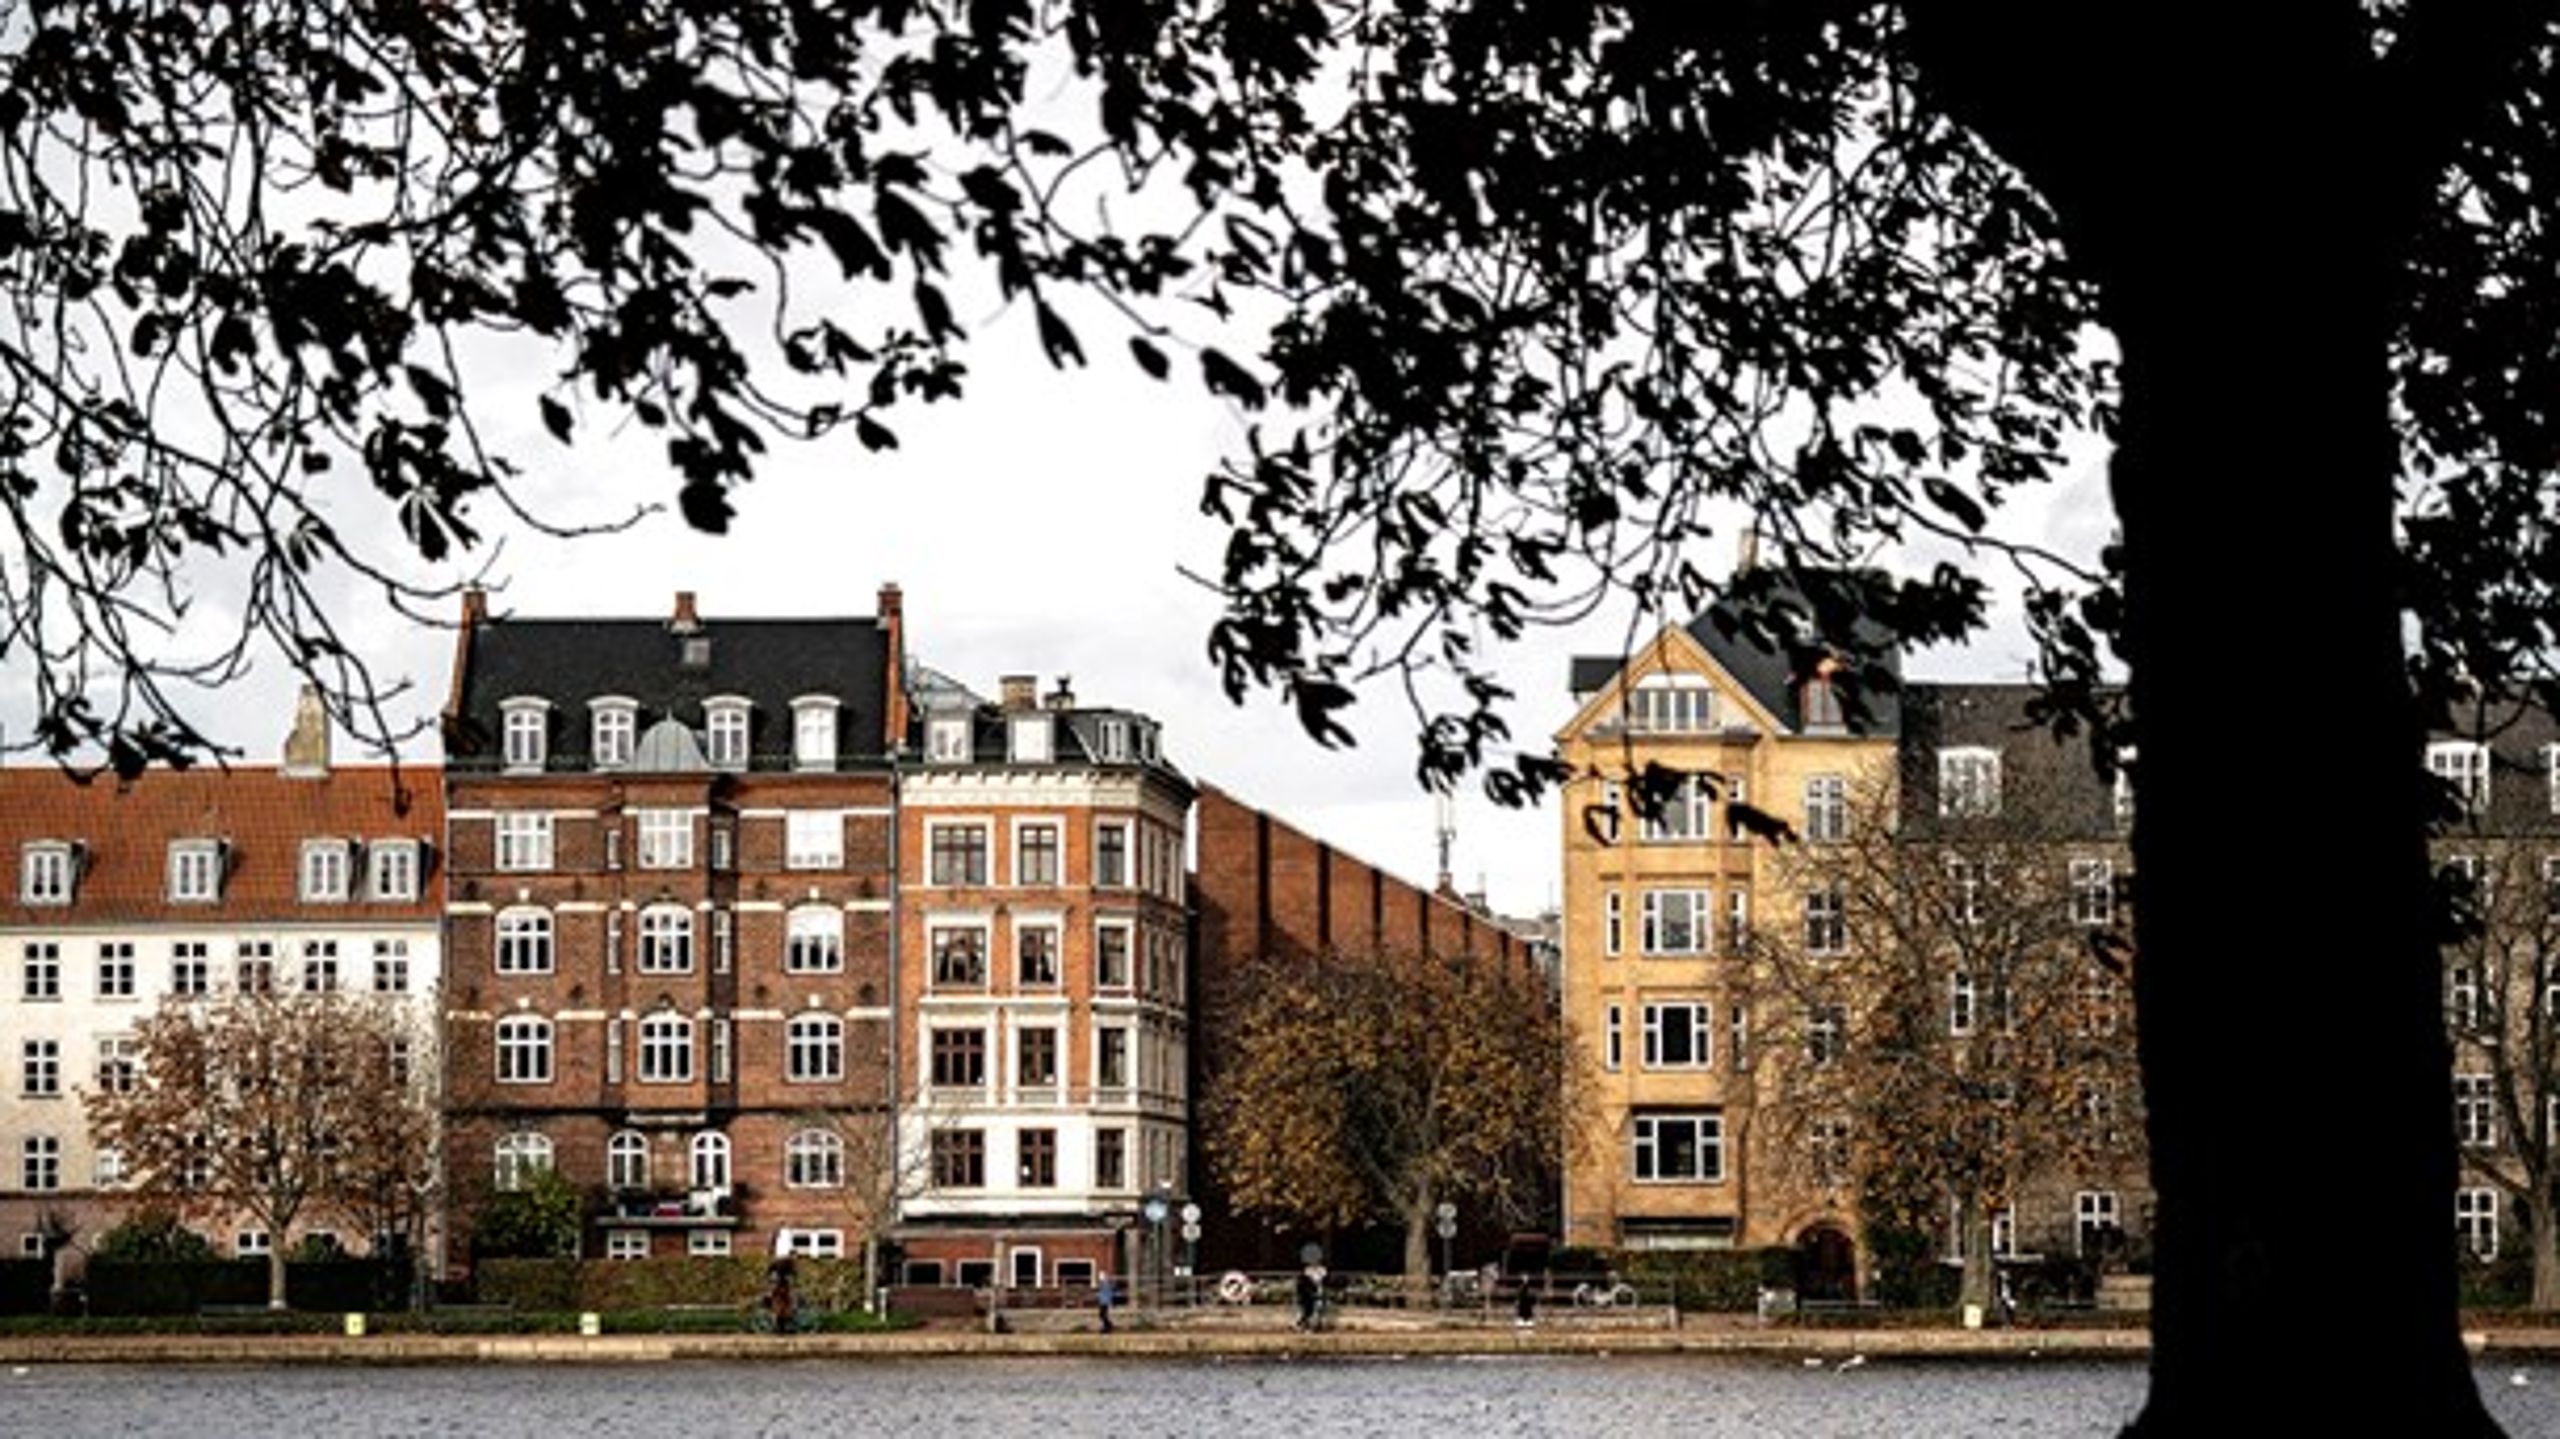 Ministerens seneste indgreb, populært kaldet "Blackstone-indgrebet", er godt nyt for københavnske boligejeres friværdi, skriver Jonas Herby.